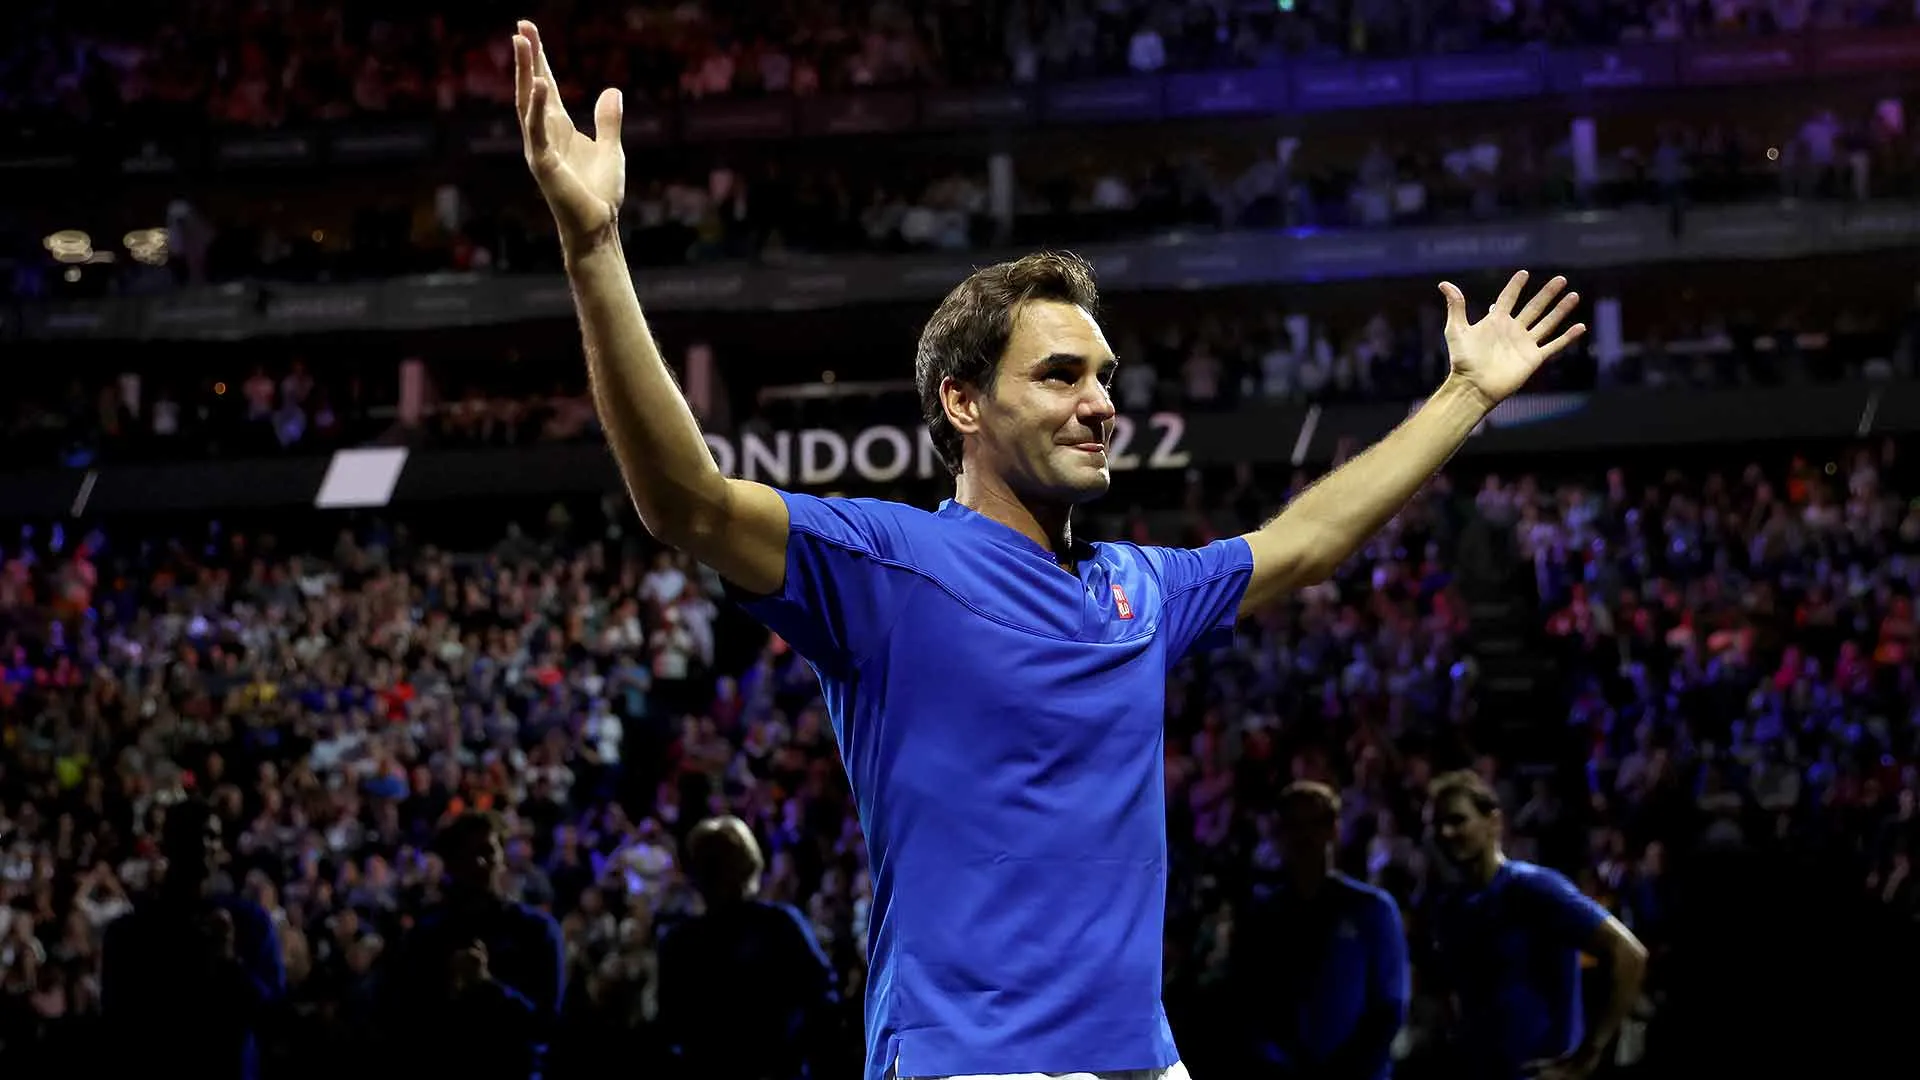 Australia Open sẵn sàng chào đón Djokovic - Federer từ chối dự lễ chia tay tại quê nhà